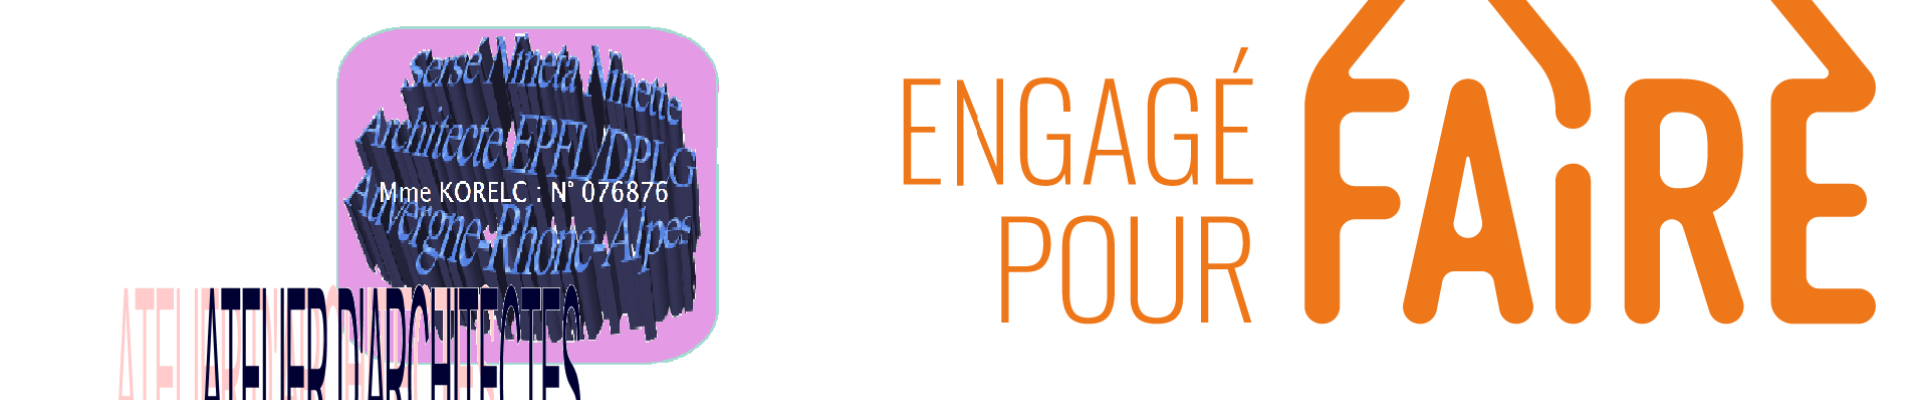 logo_engage_pour_faire_orange.png